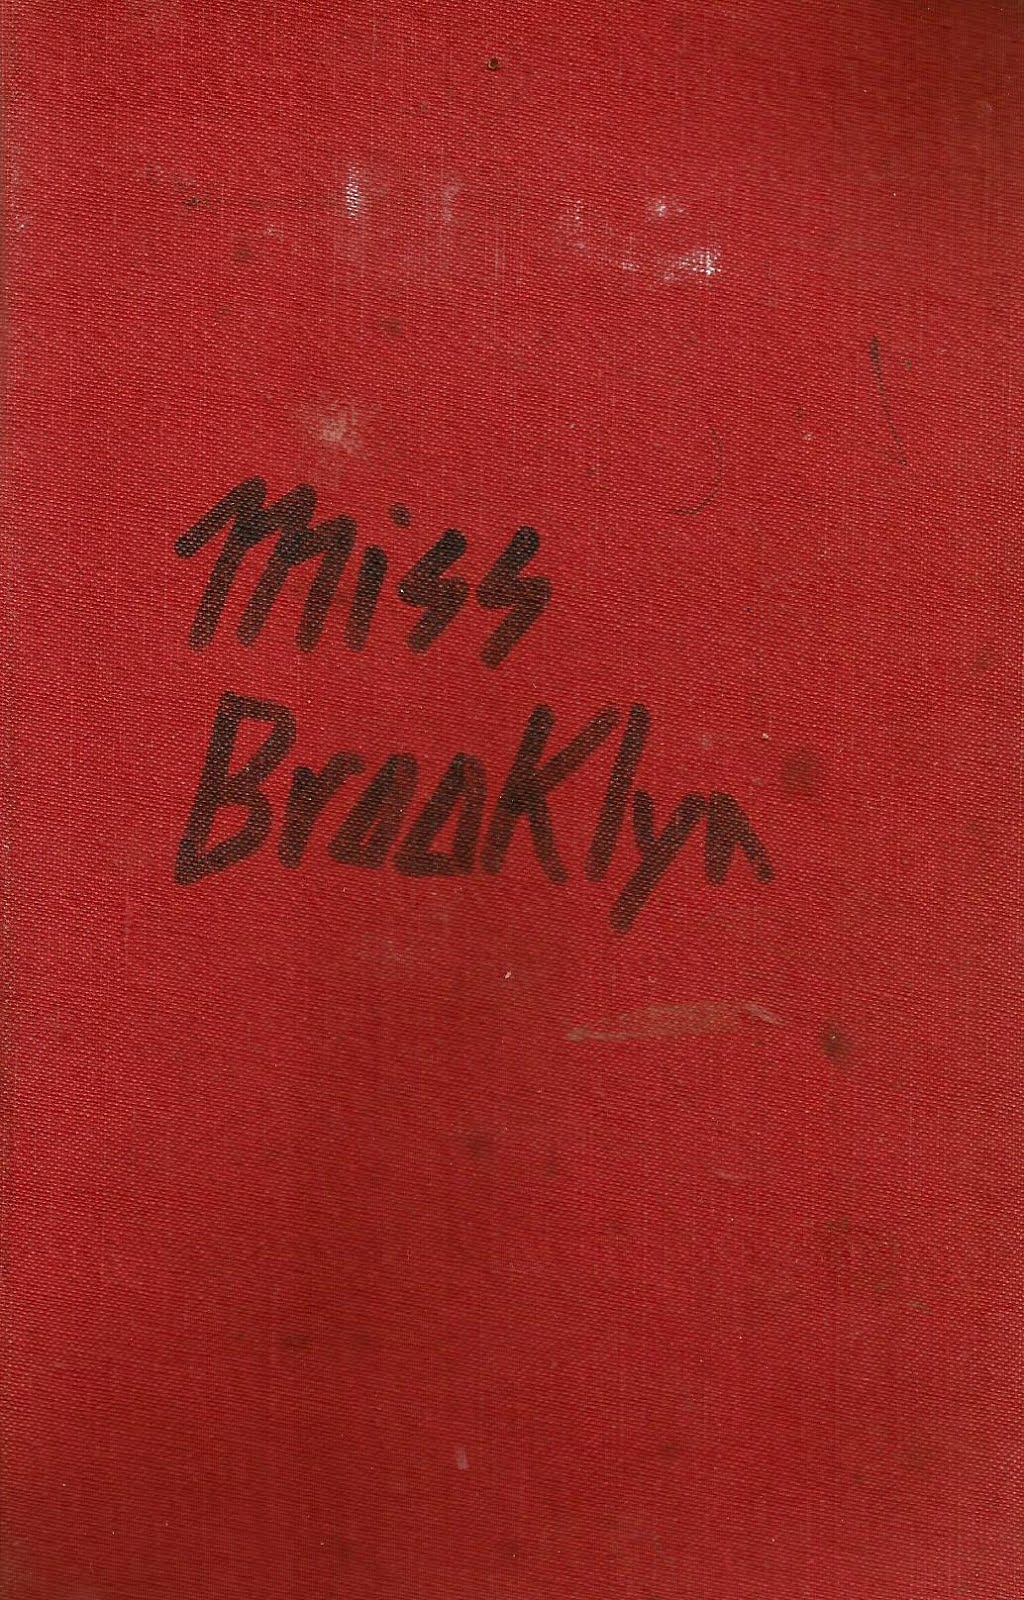 Miss Brooklyn